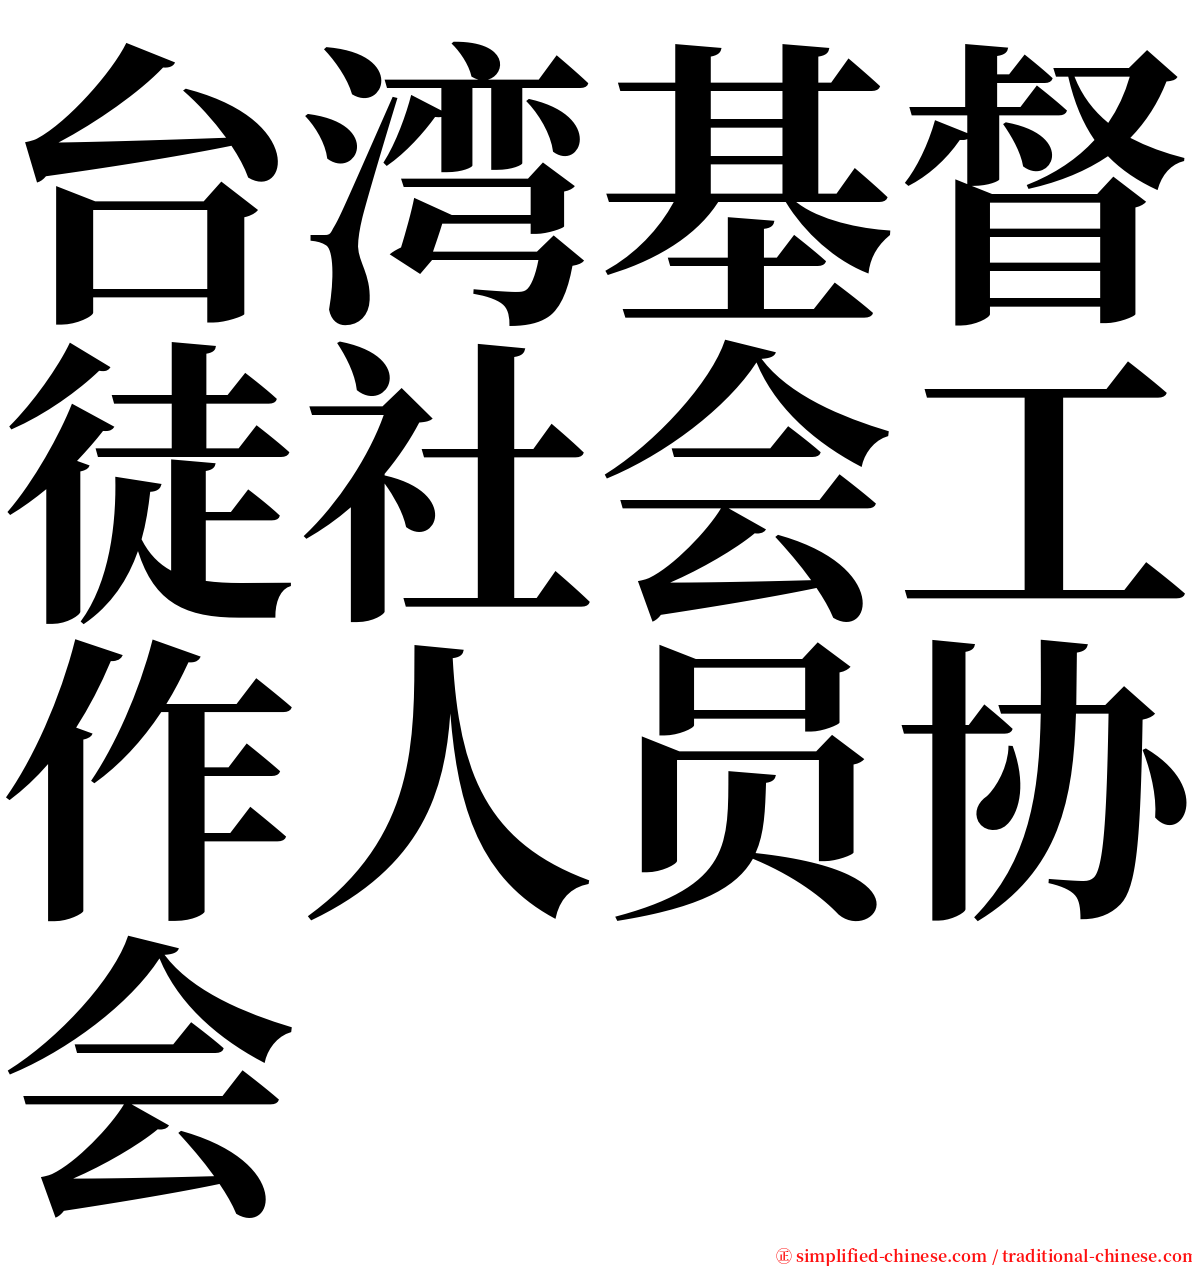 台湾基督徒社会工作人员协会 serif font